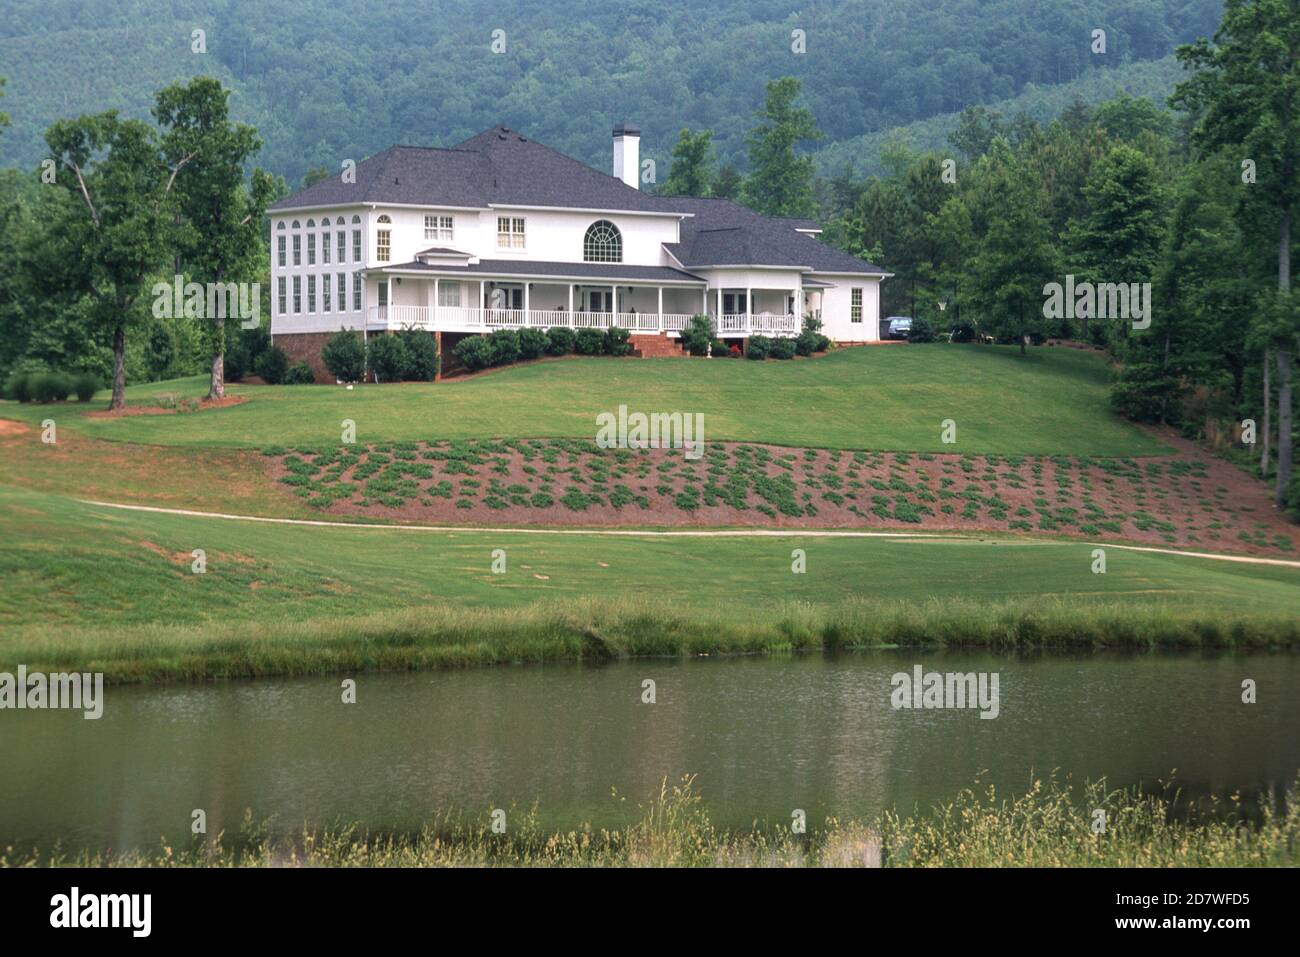 Maison de style plantations en Géorgie, USA Banque D'Images